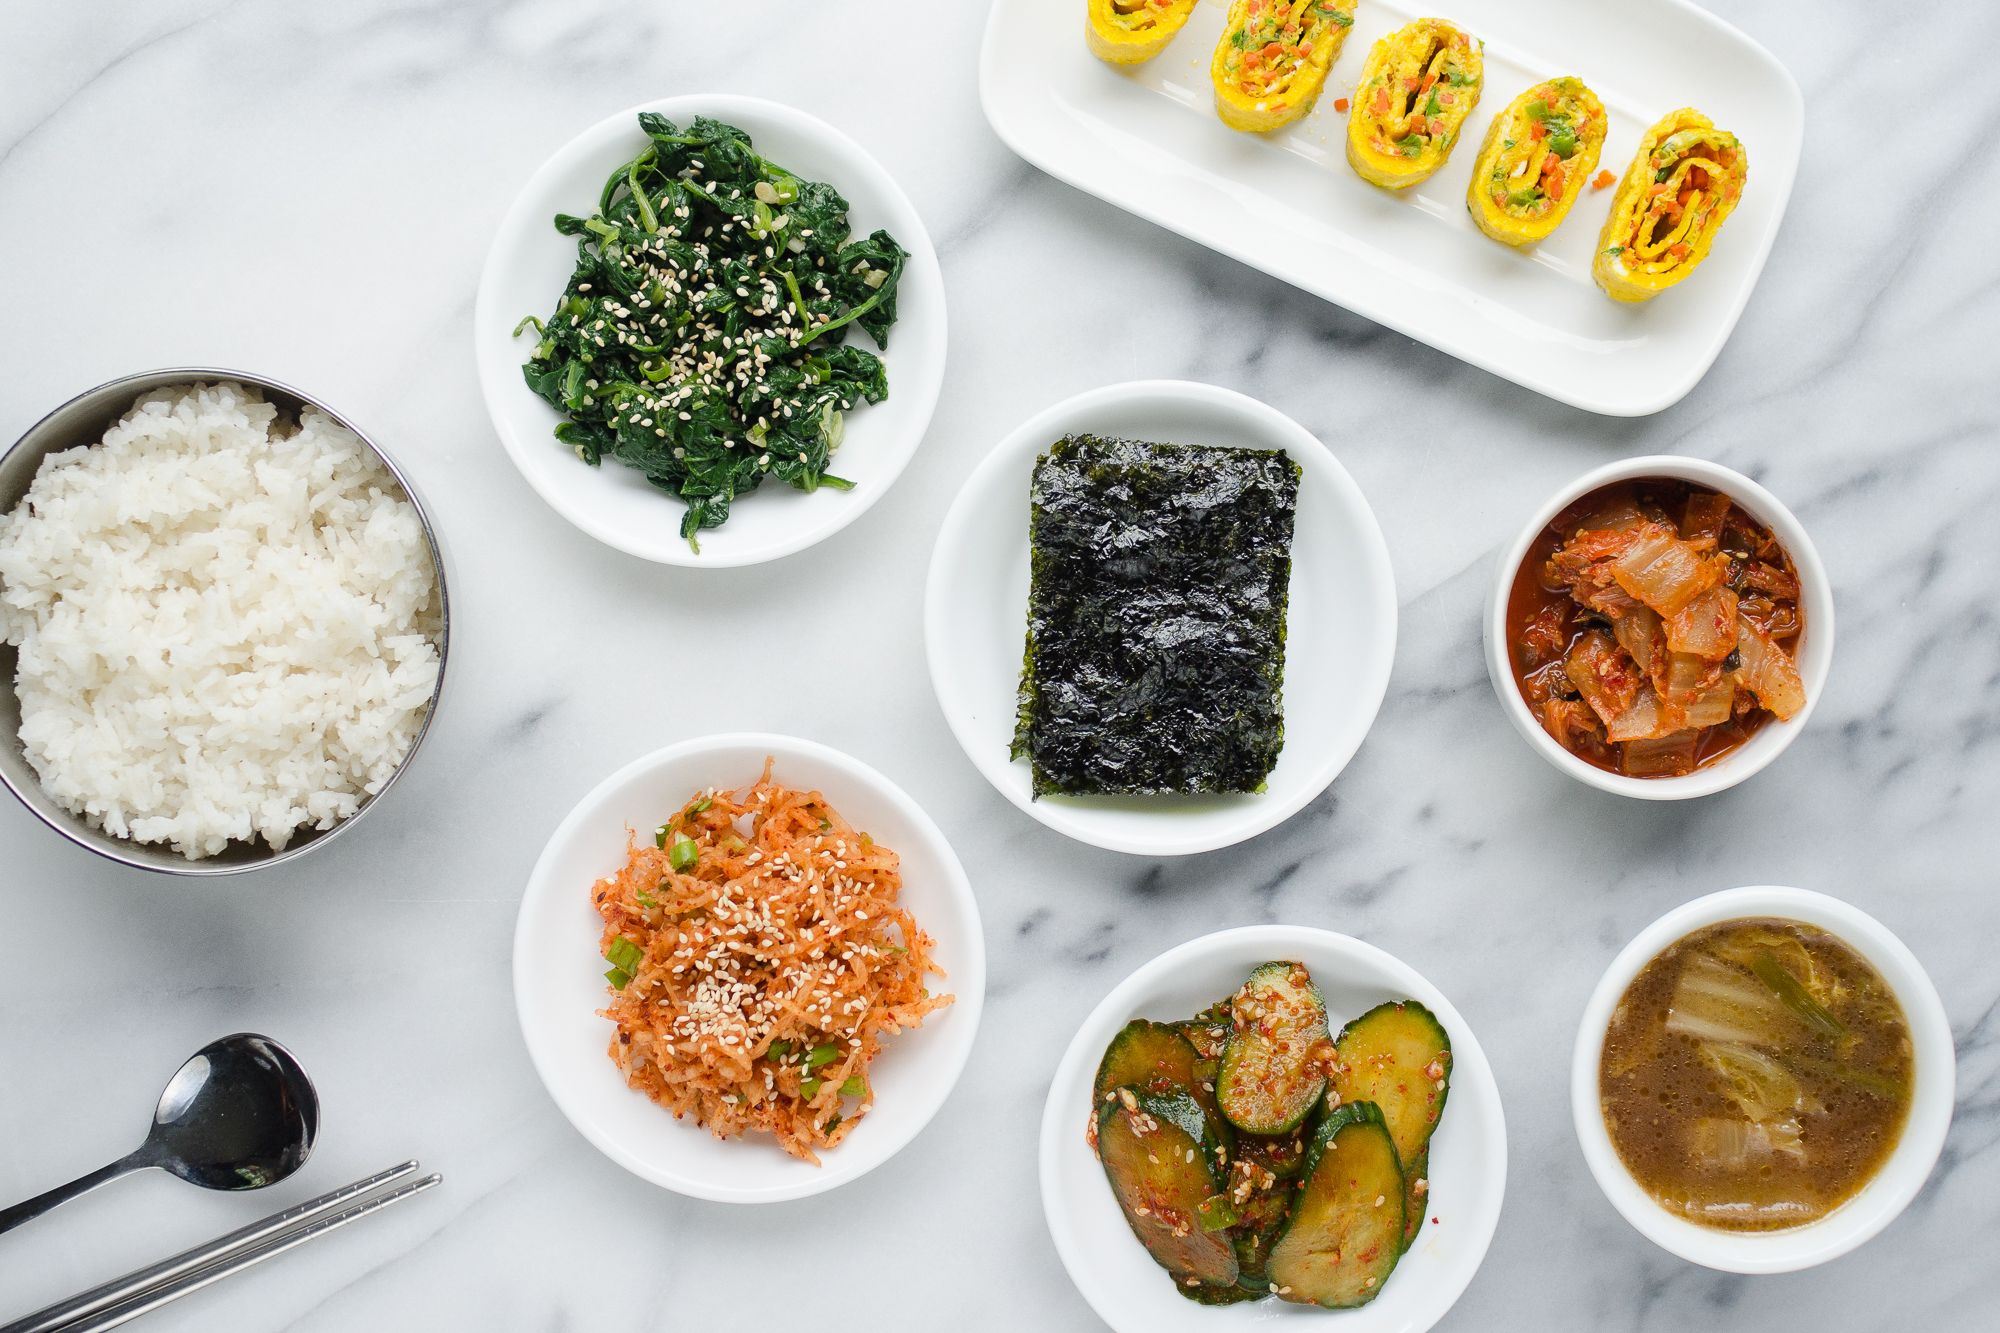 5 Easy Korean Side Dishes